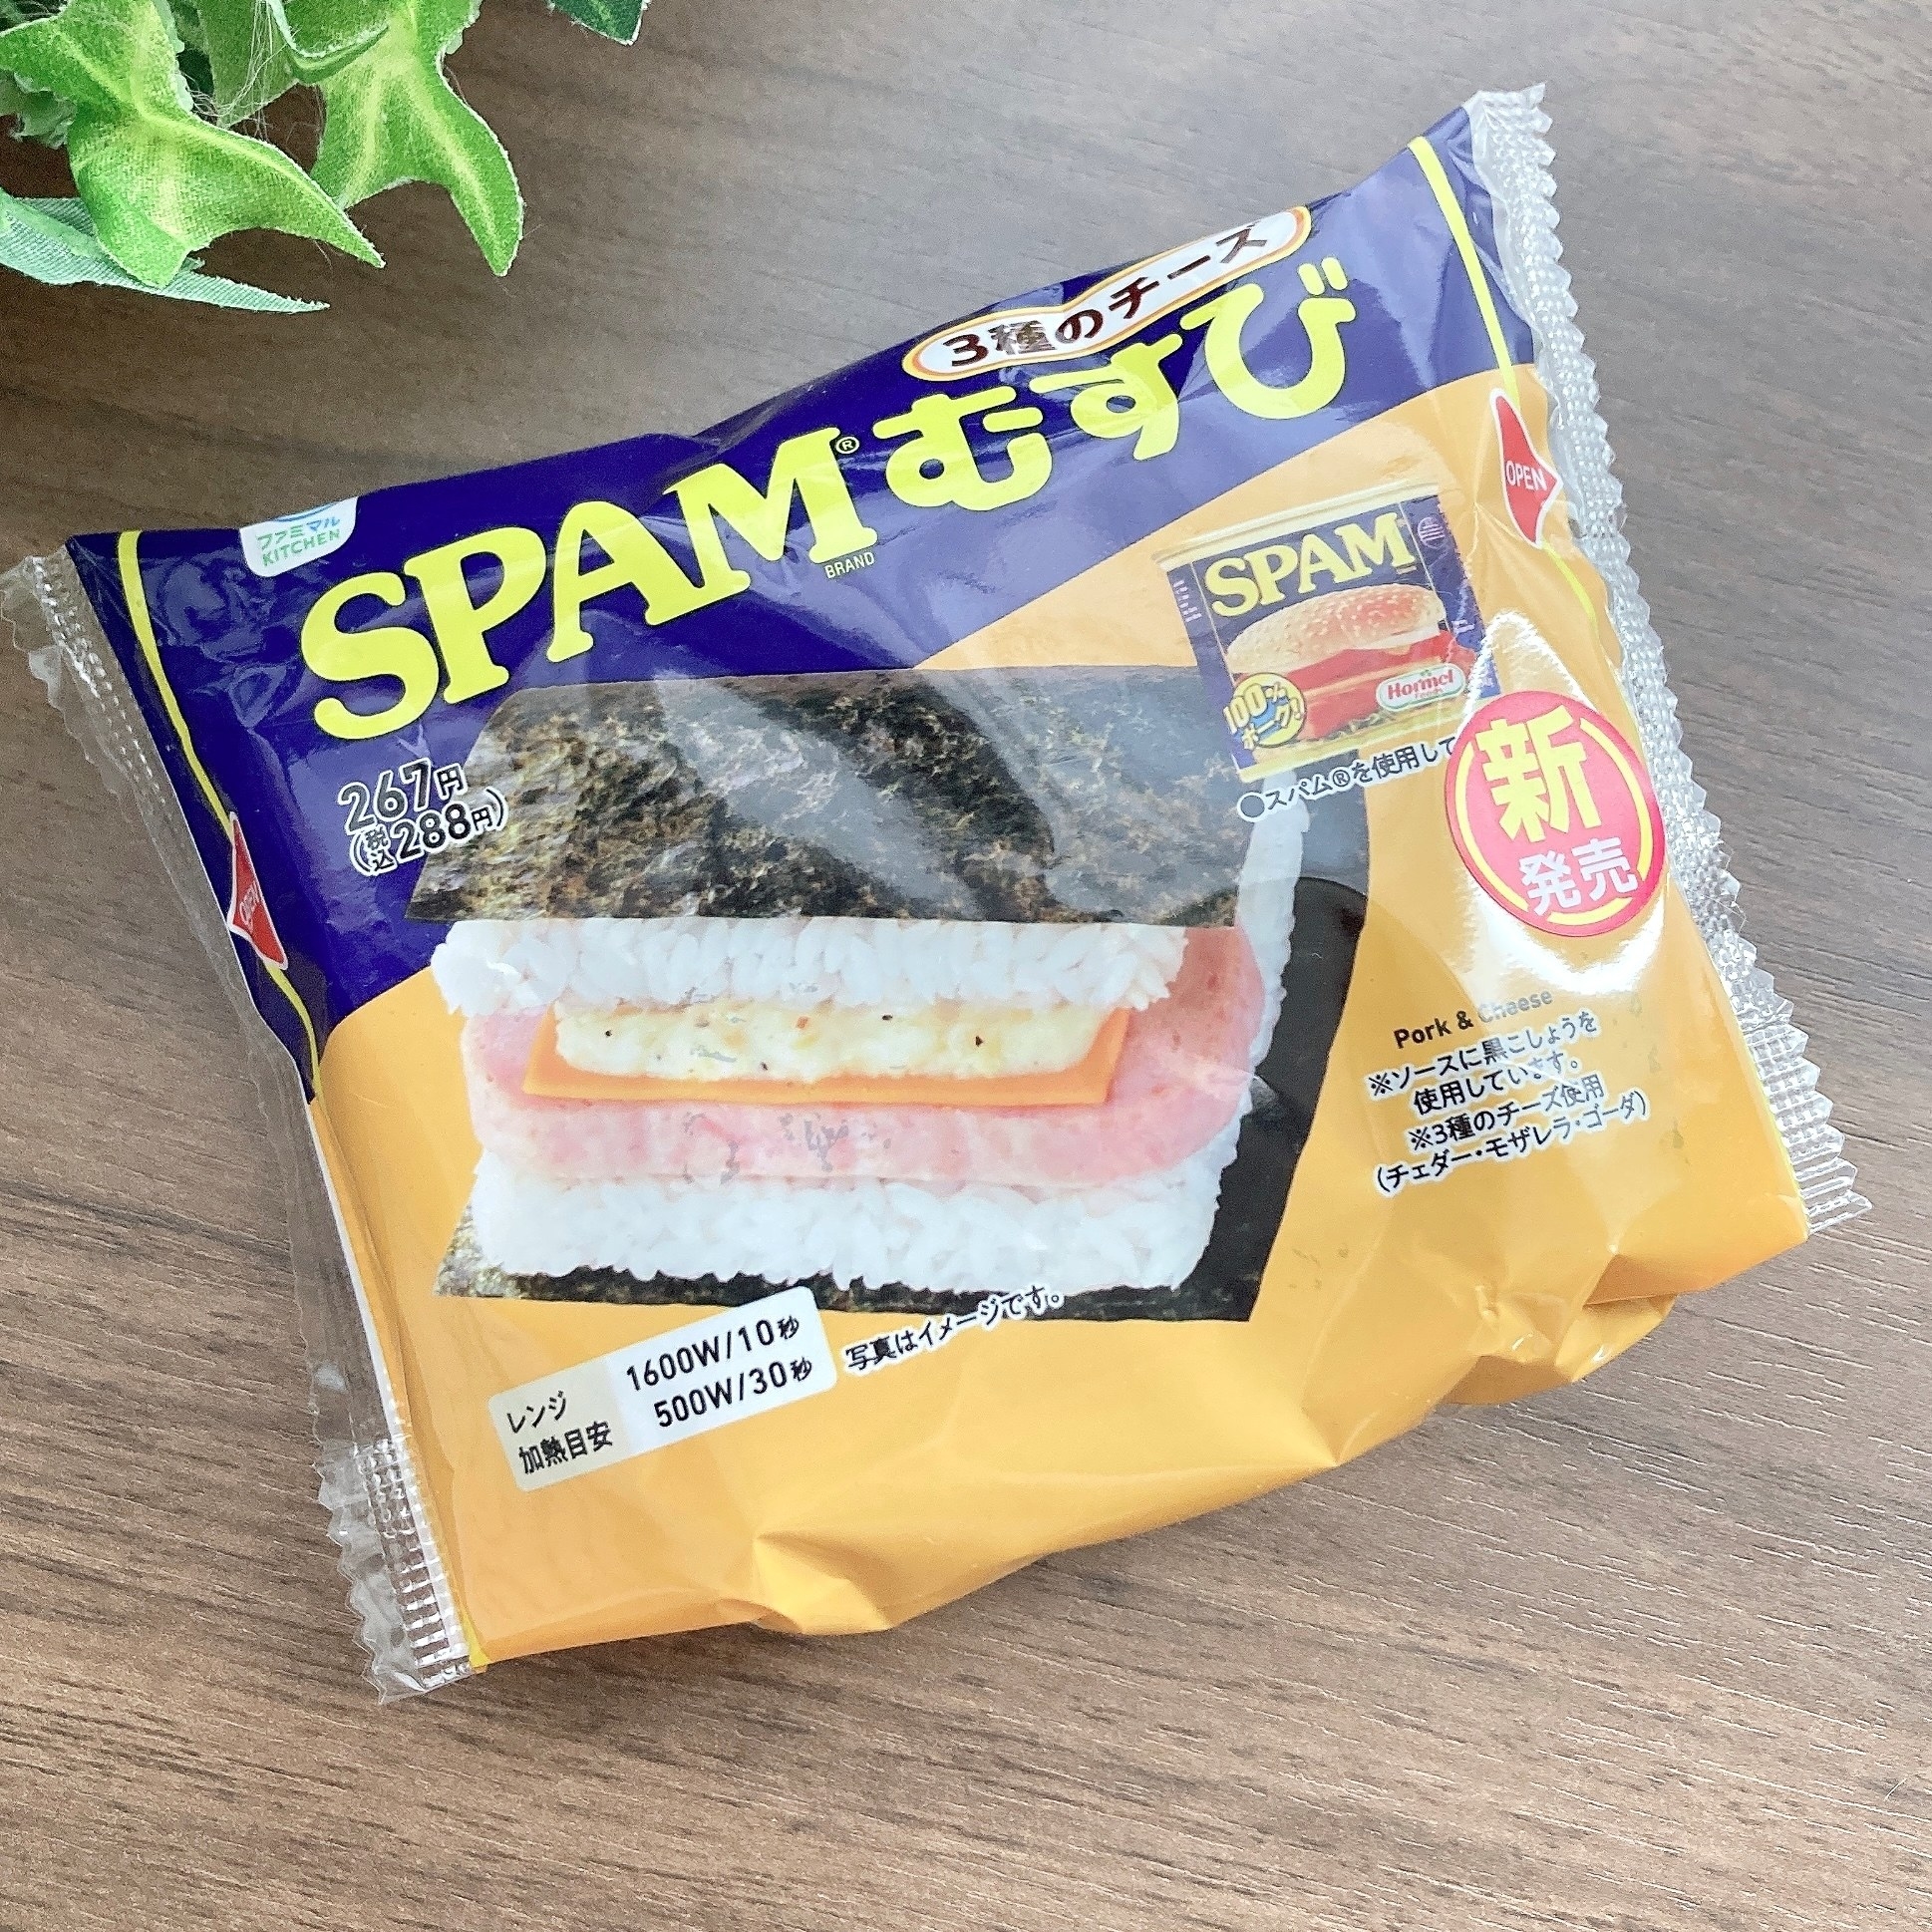 FamilyMart（ファミリーマート）のオススメのおにぎり「SPAM®むすび 3種のチーズ」